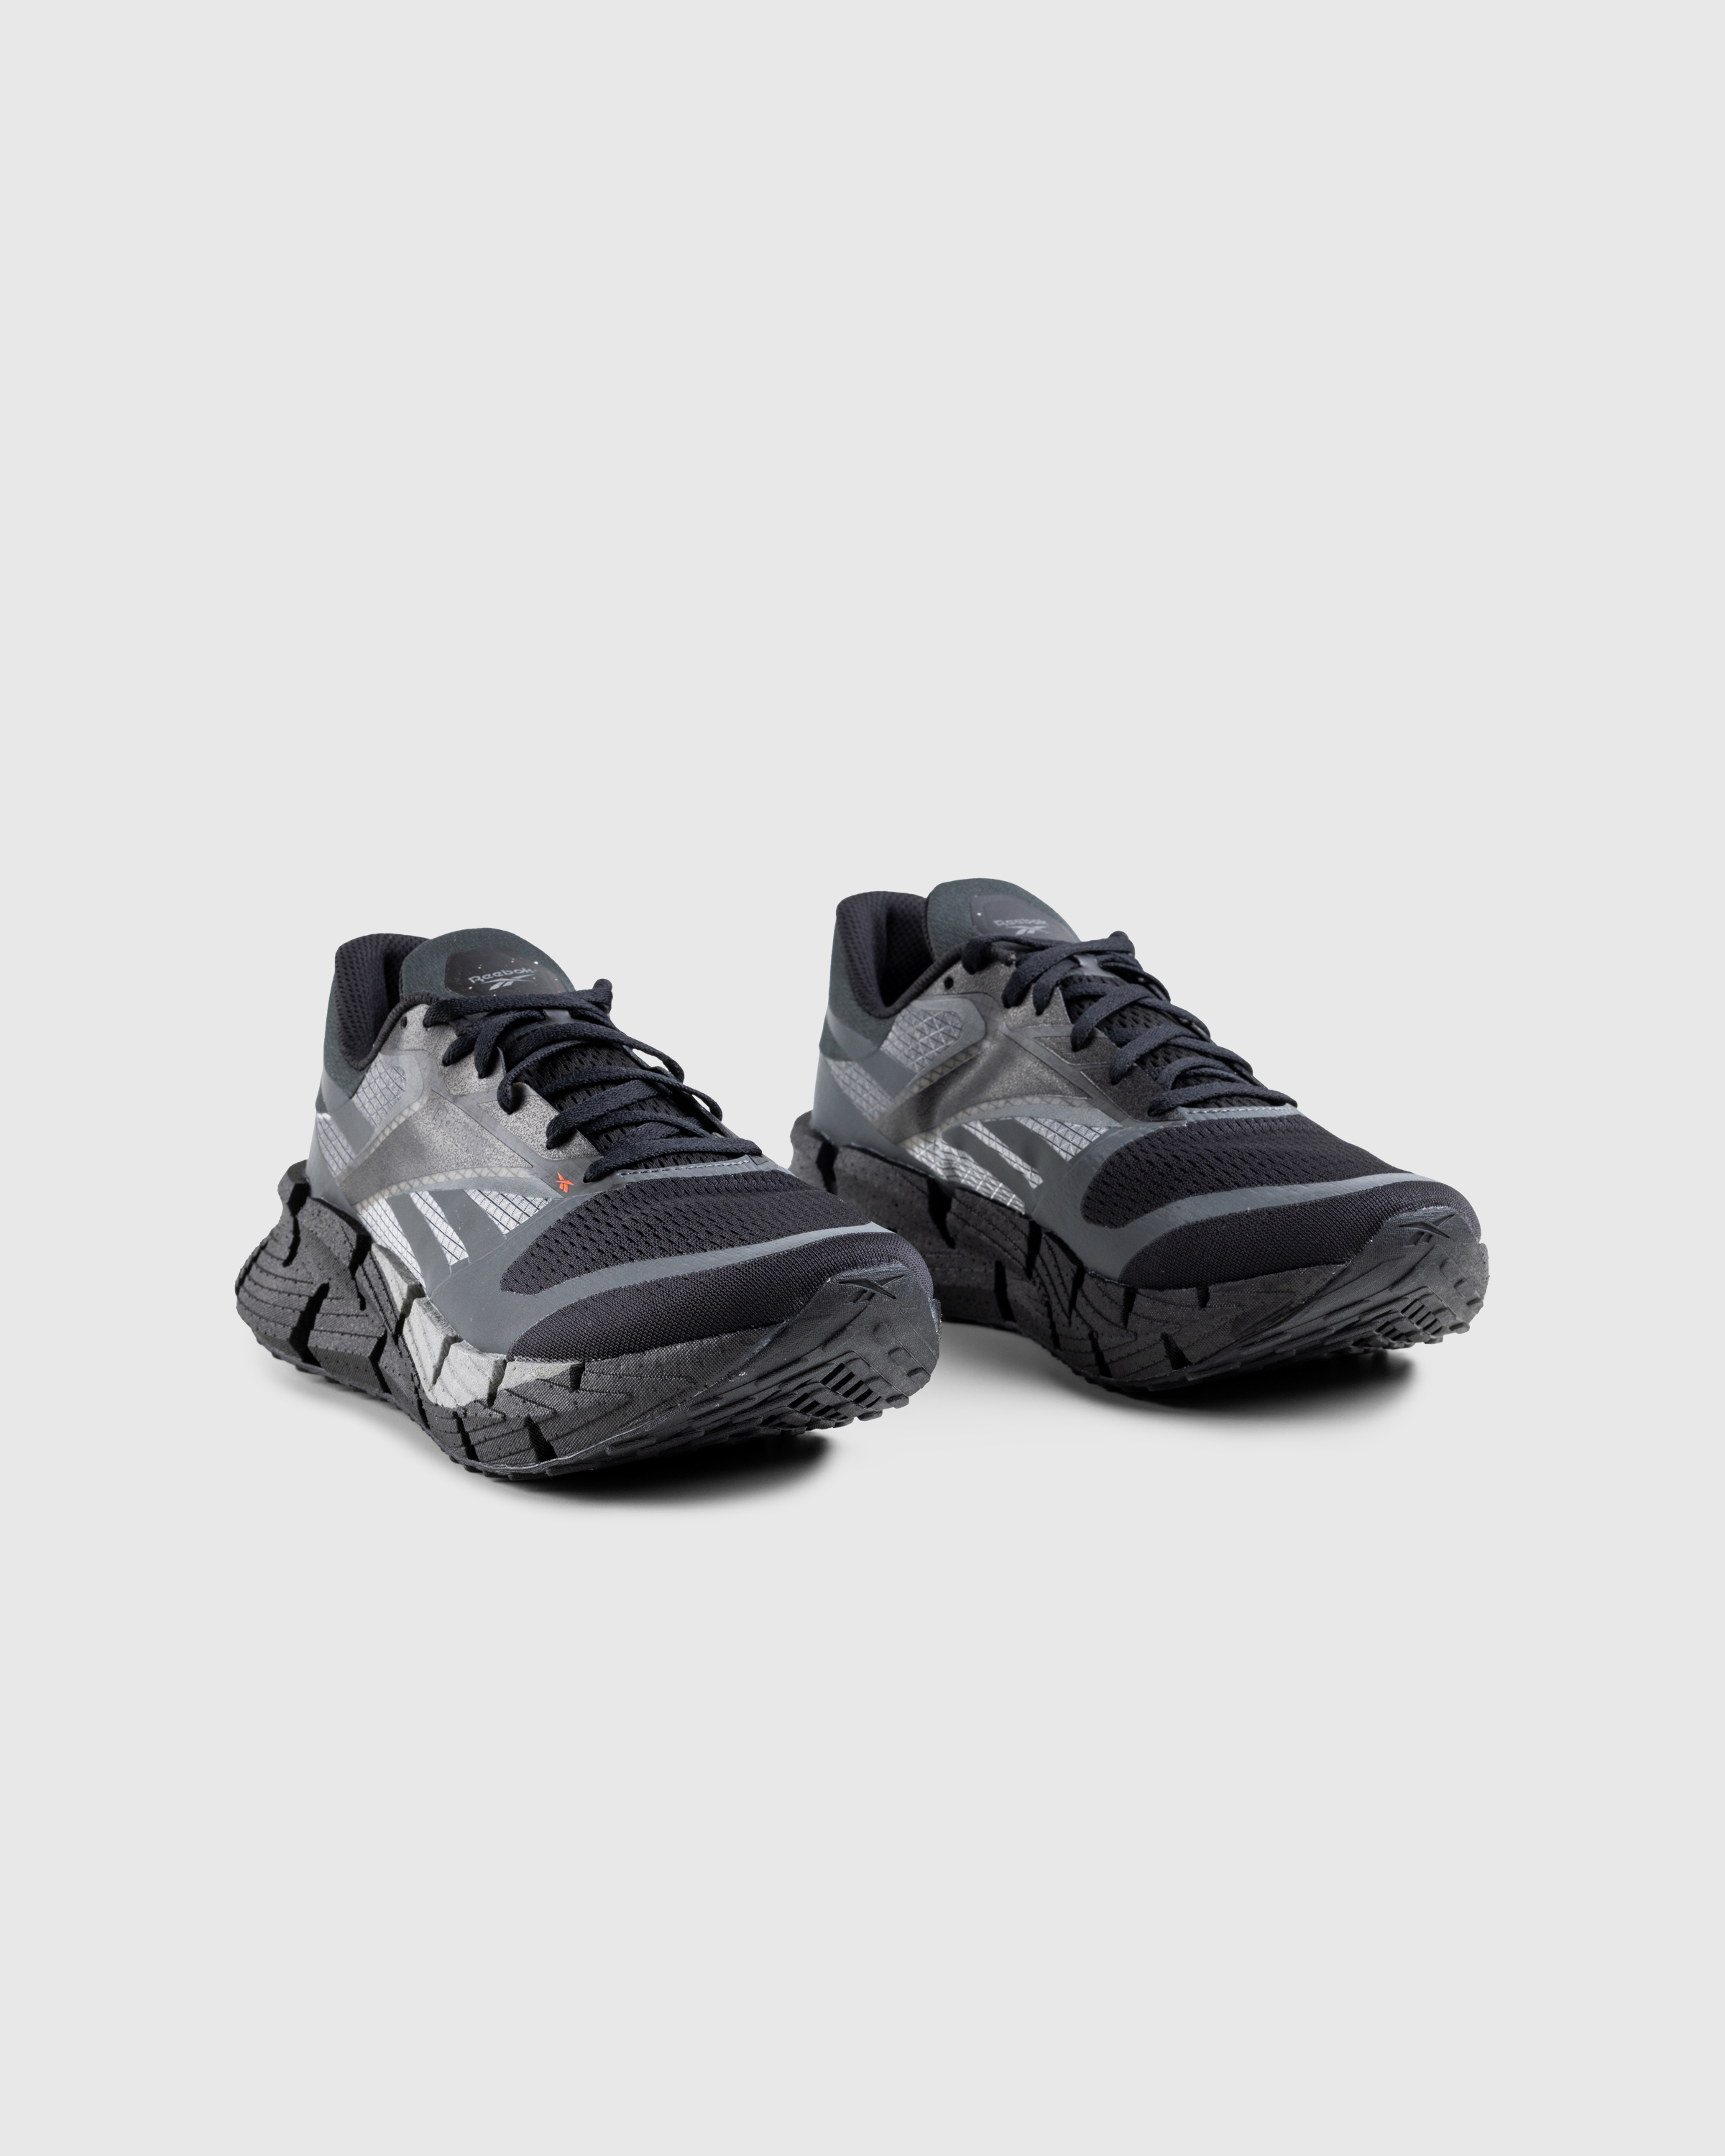 Reebok – FloatZig Black - Low Top Sneakers - Black - Image 3